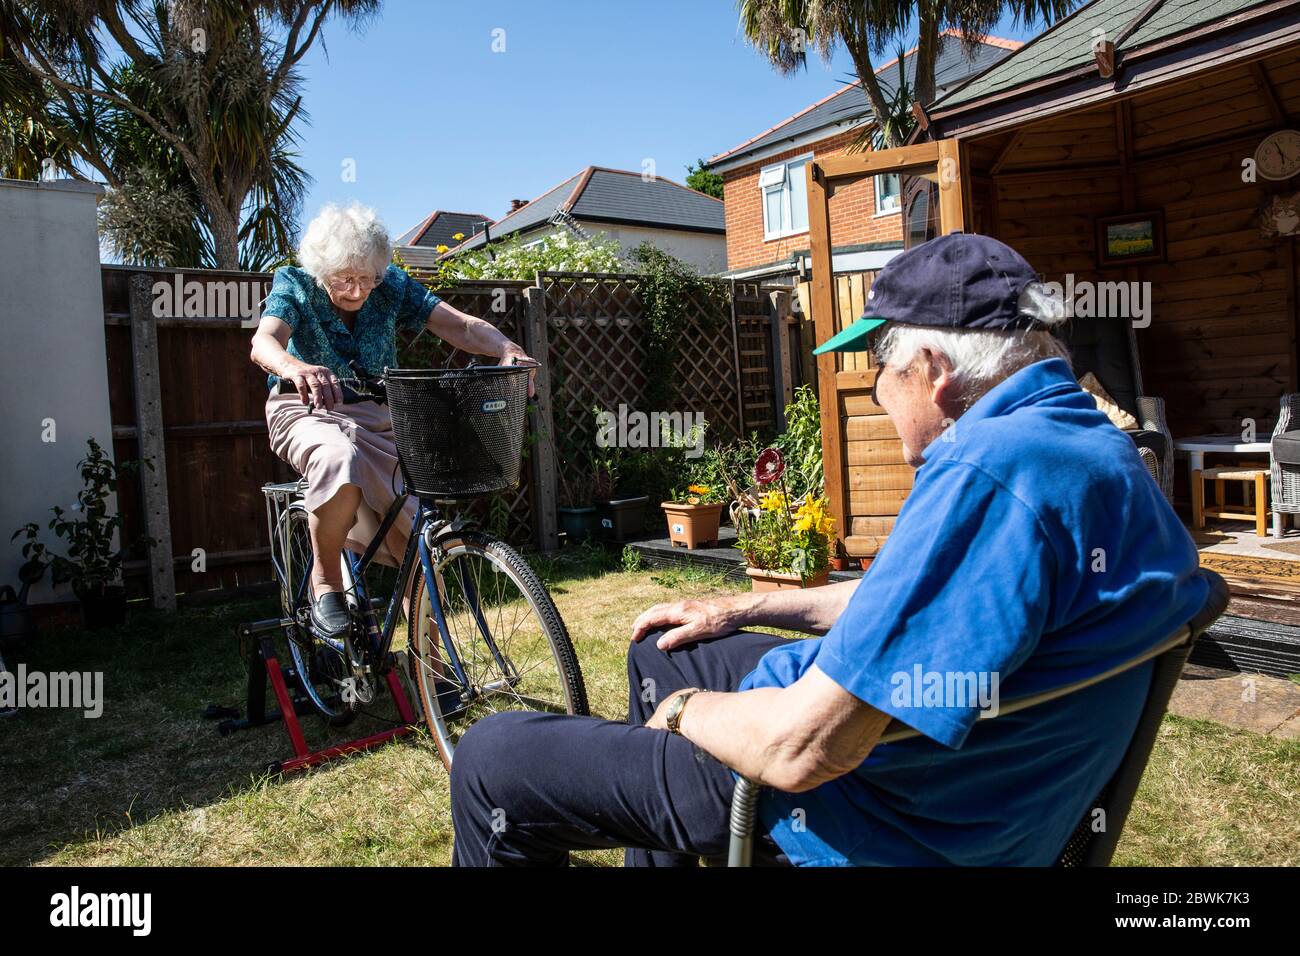 Coppie anziane sia nel loro 80 che tengono la misura su un supporto dell'addestratore della bicicletta nel loro giardino posteriore durante il lockdown del coronavirus, Inghilterra sudoccidentale, Regno Unito Foto Stock